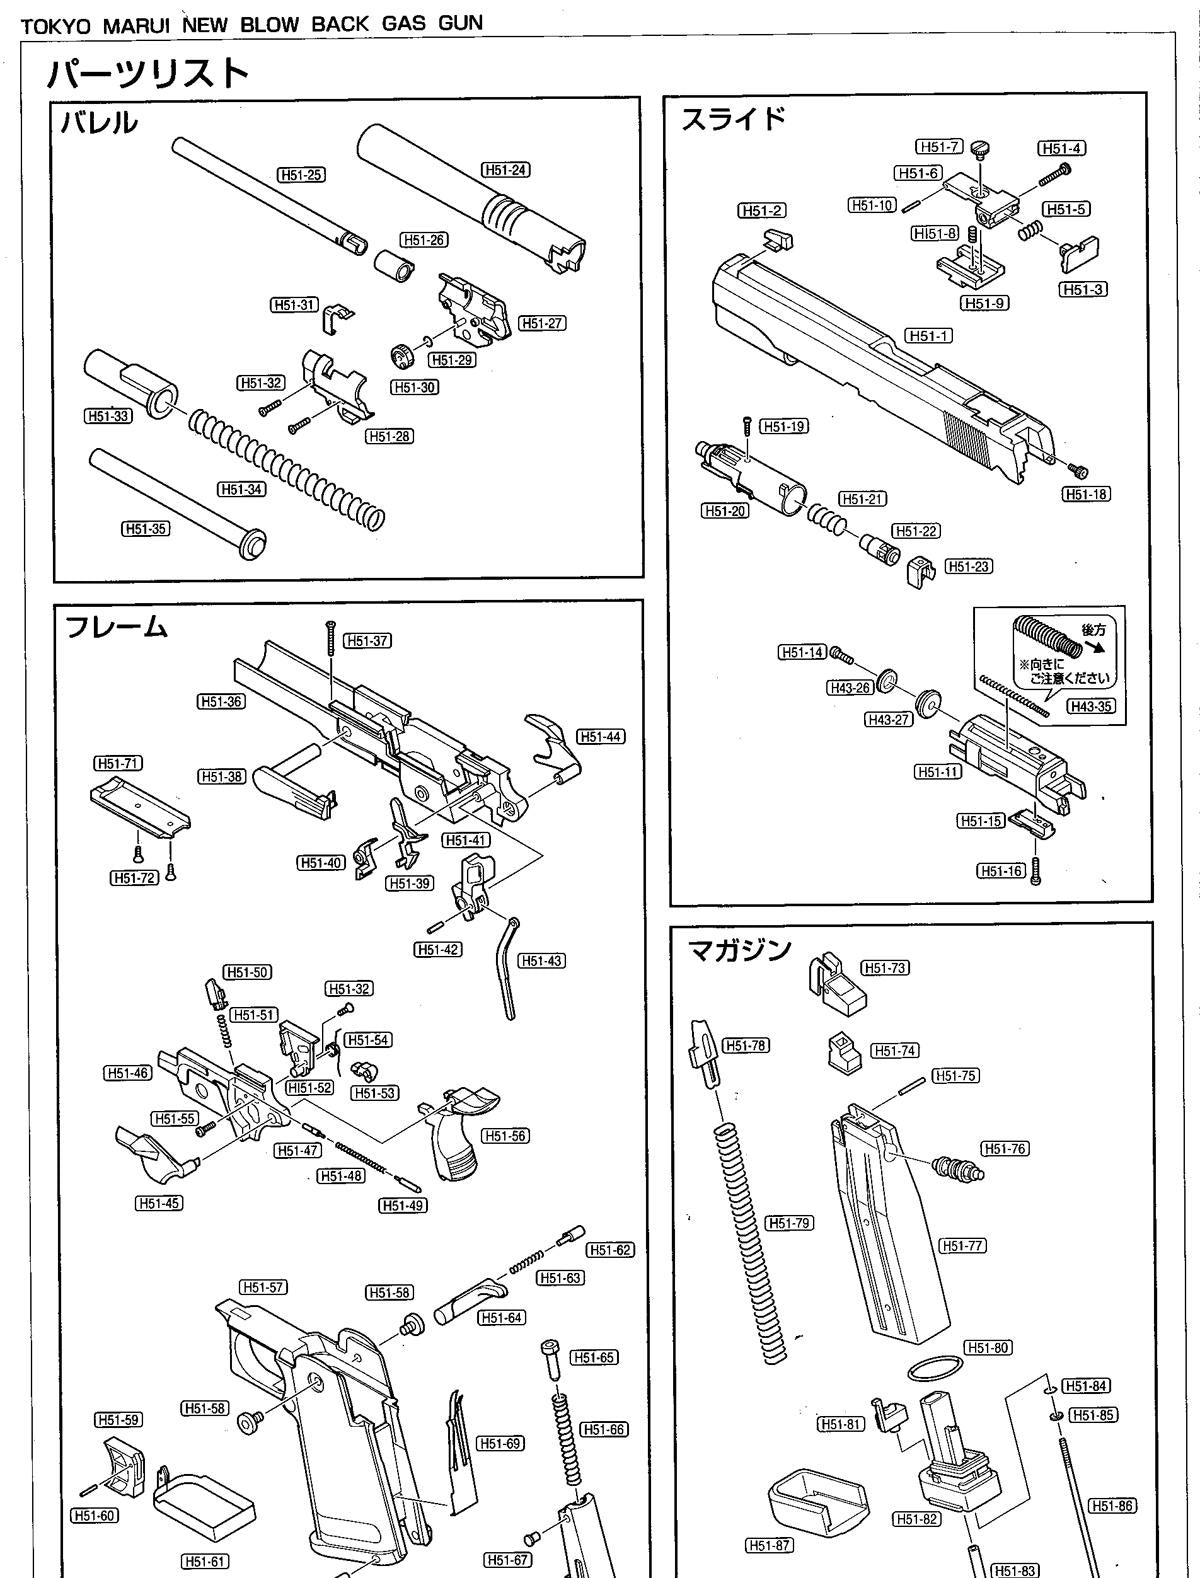 Tokyo Marui Hi-Capa - Replacement Part H51-68 - Hammer Grip Block